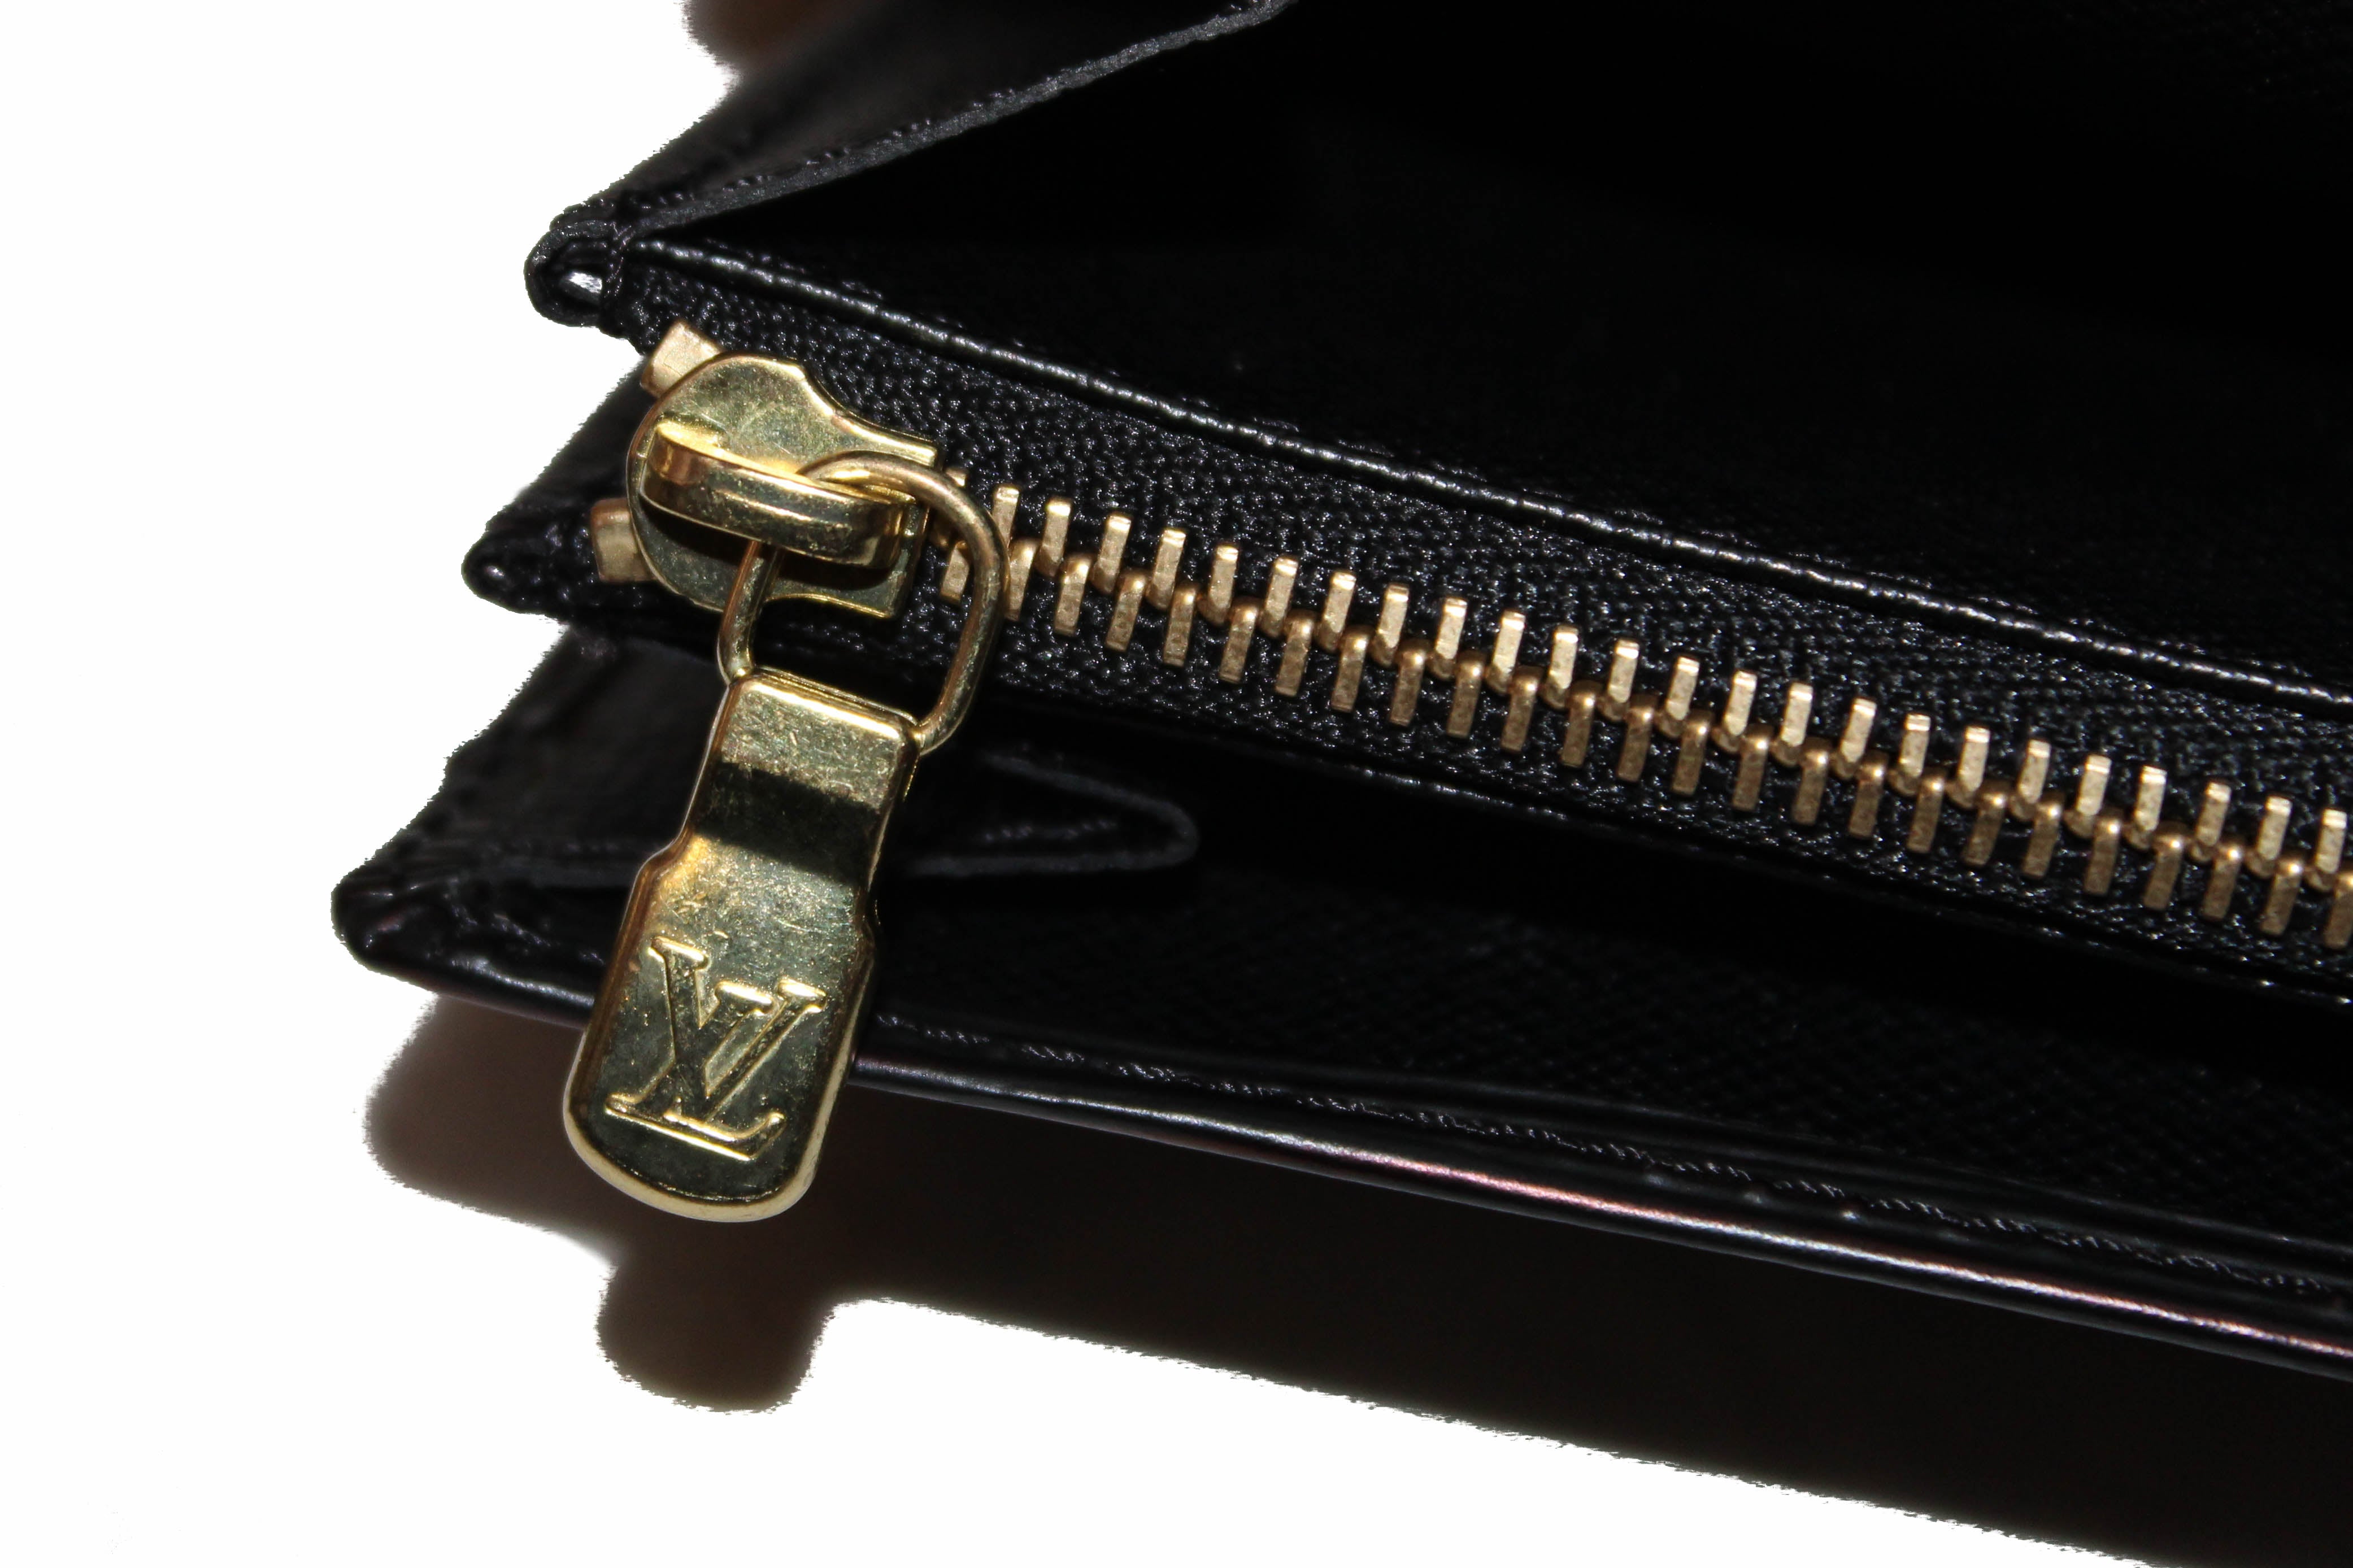 Authentic Louis Vuitton Black Epi Leather Sarah Wallet